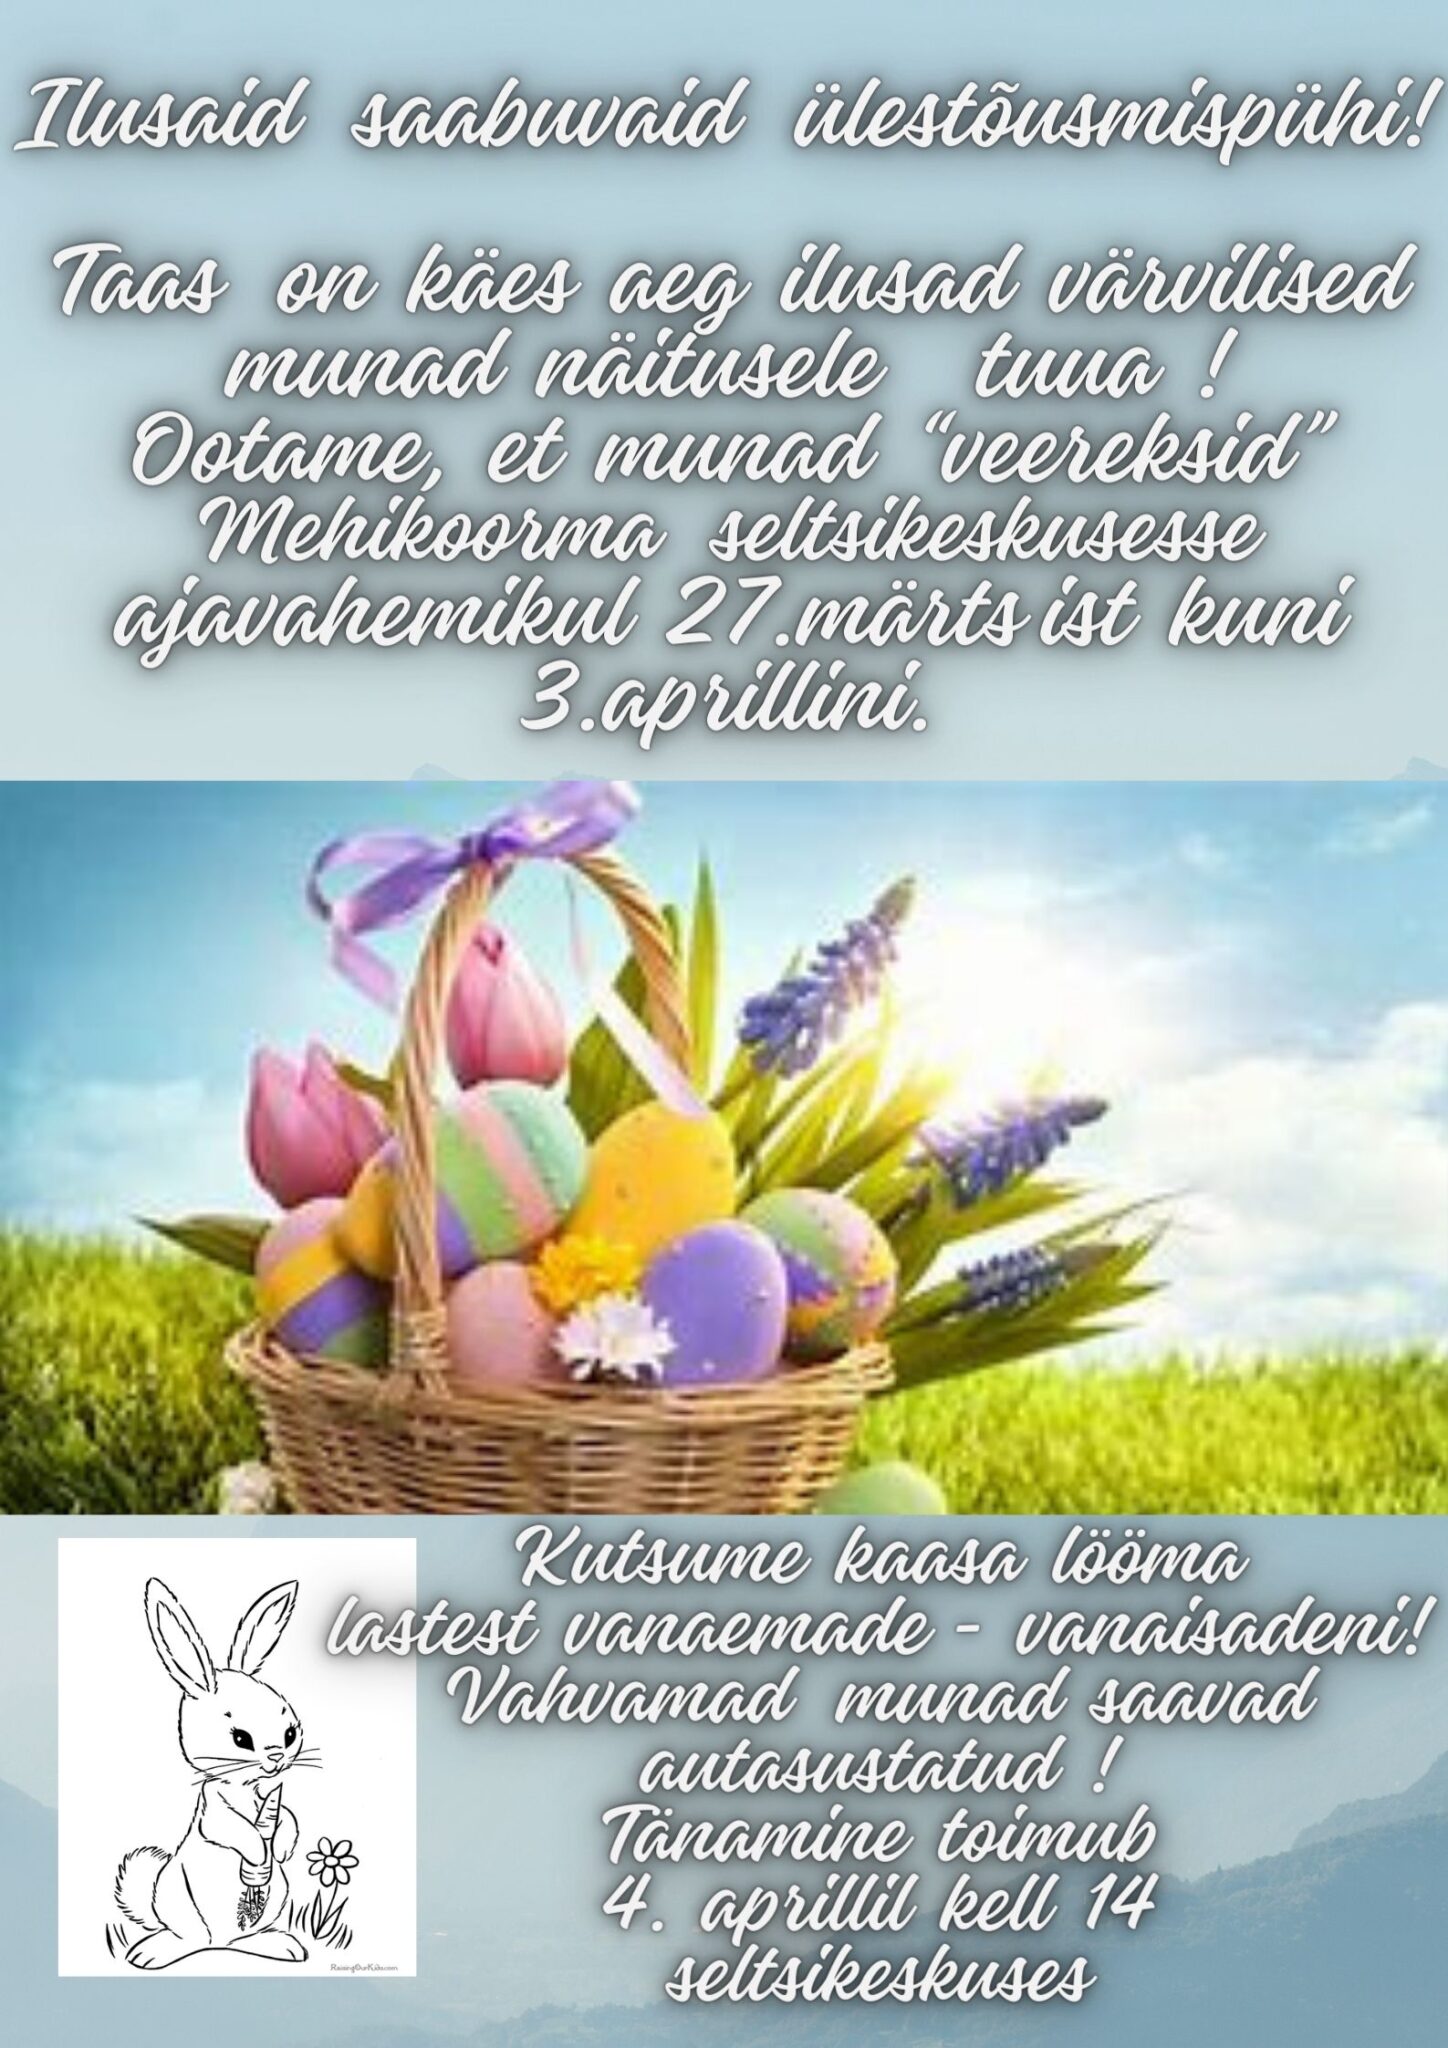 Ülestõusmispühade tähistamine @ Mehikoorma seltsikeskus | Mehikoorma | Põlva maakond | Eesti